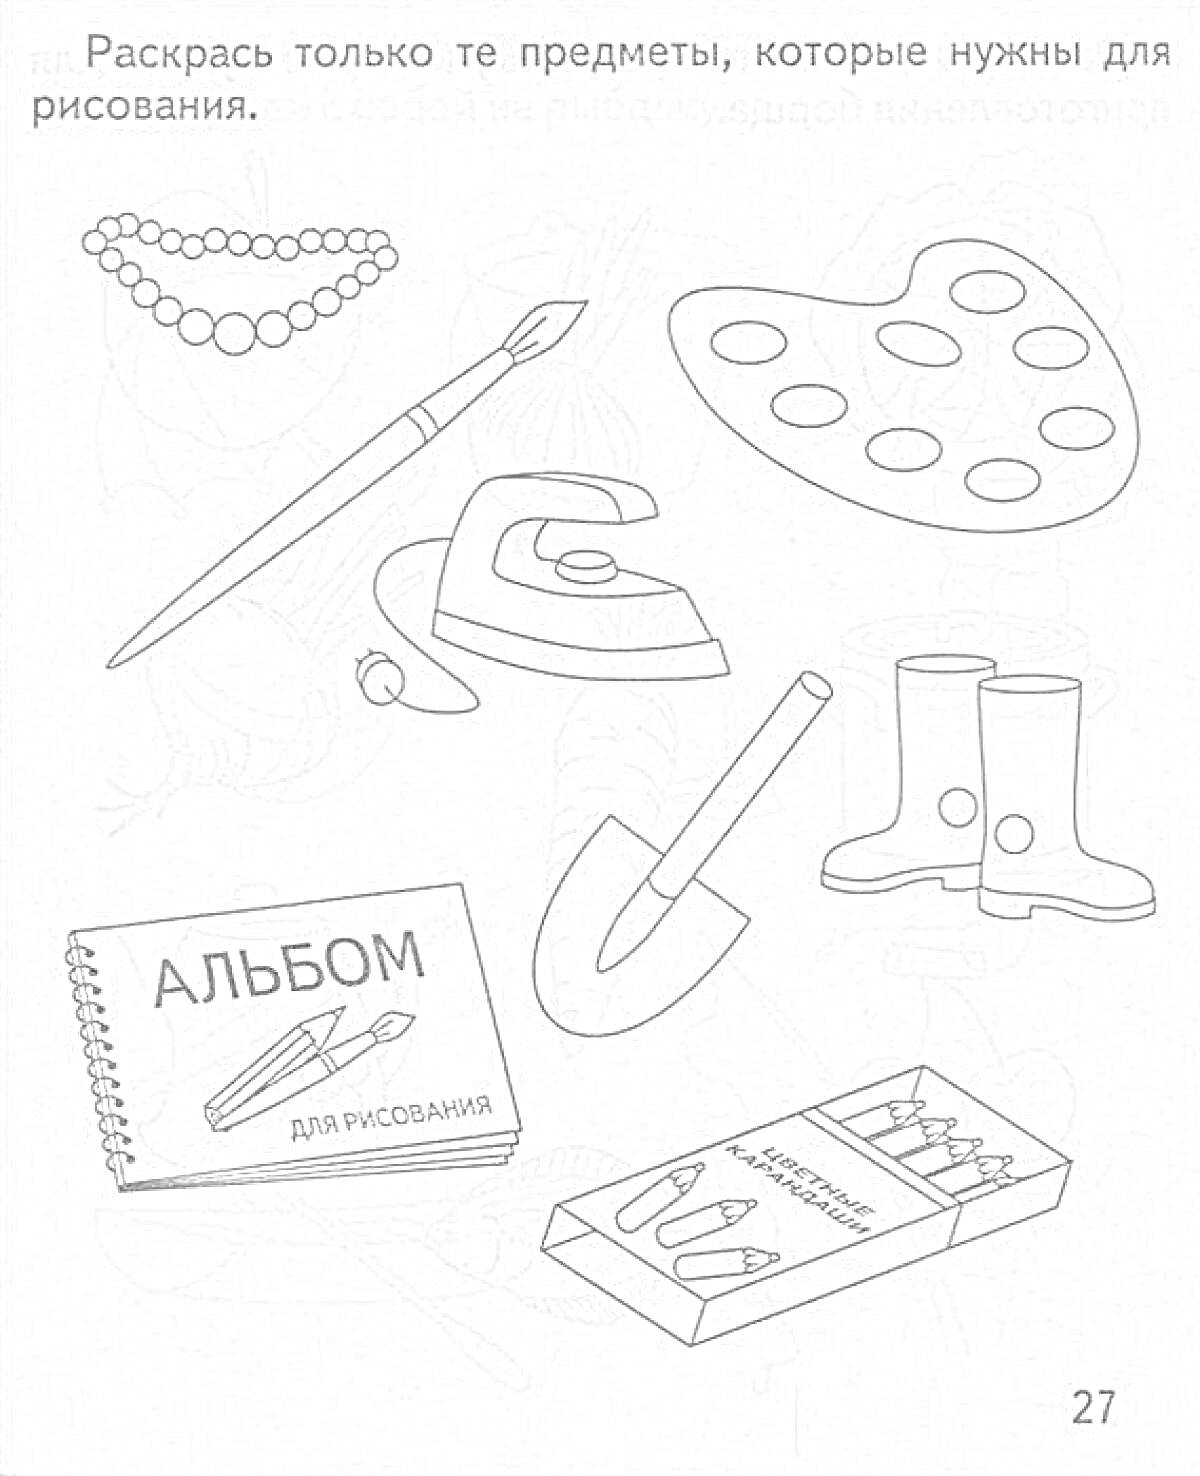 Раскраска Набор предметов - бусы, кисточка, палитра, утюг, сапоги, альбом для рисования, лопата, коробка карандашей